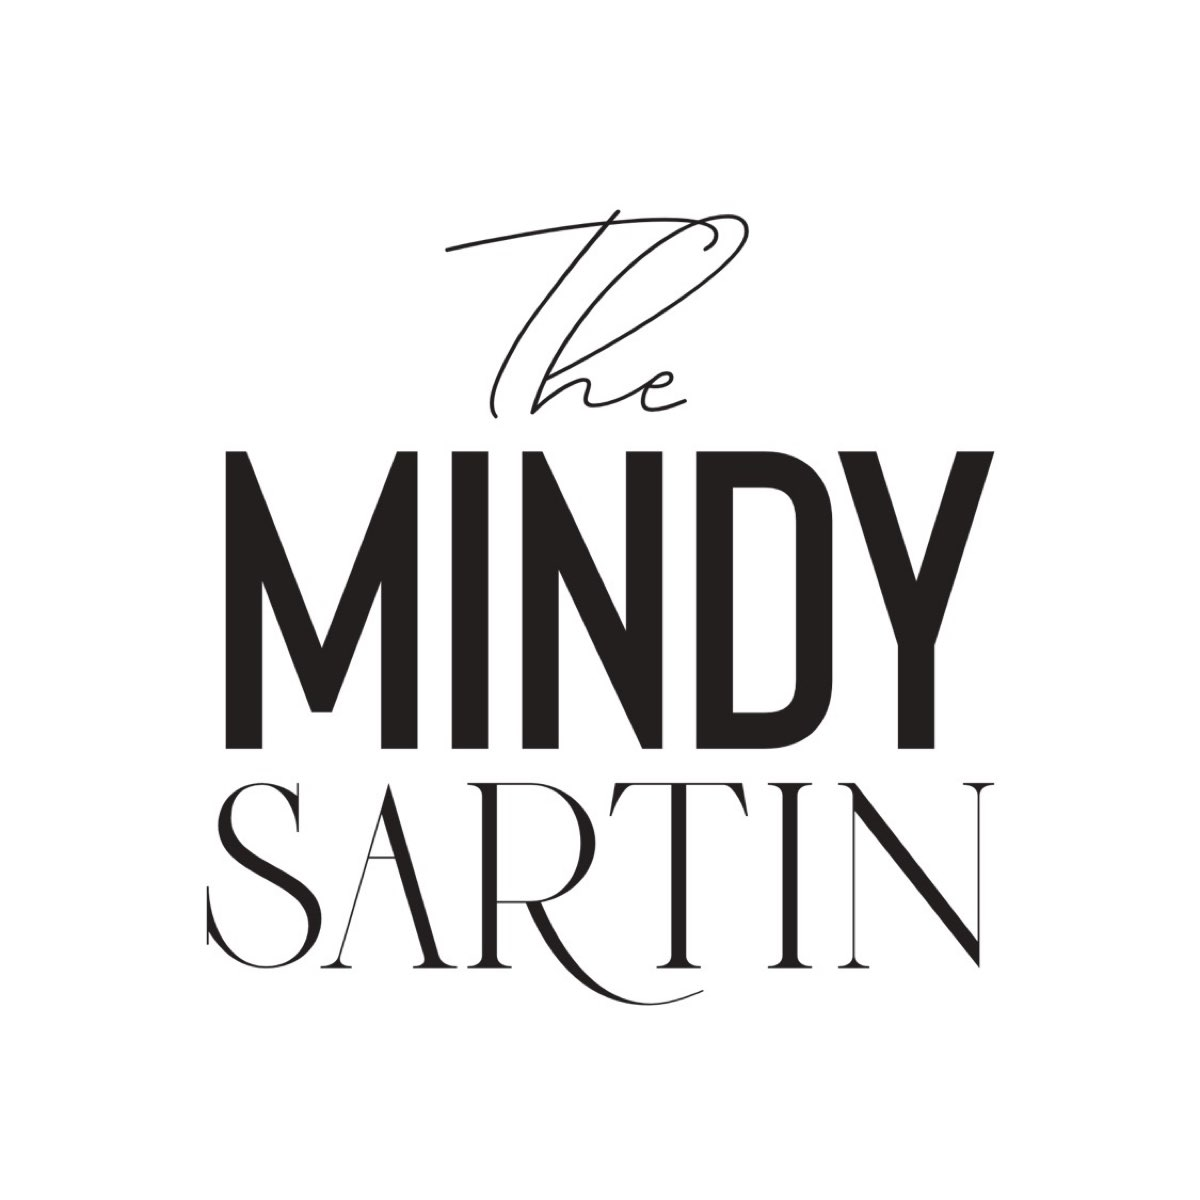 The Mindy Sartin logo